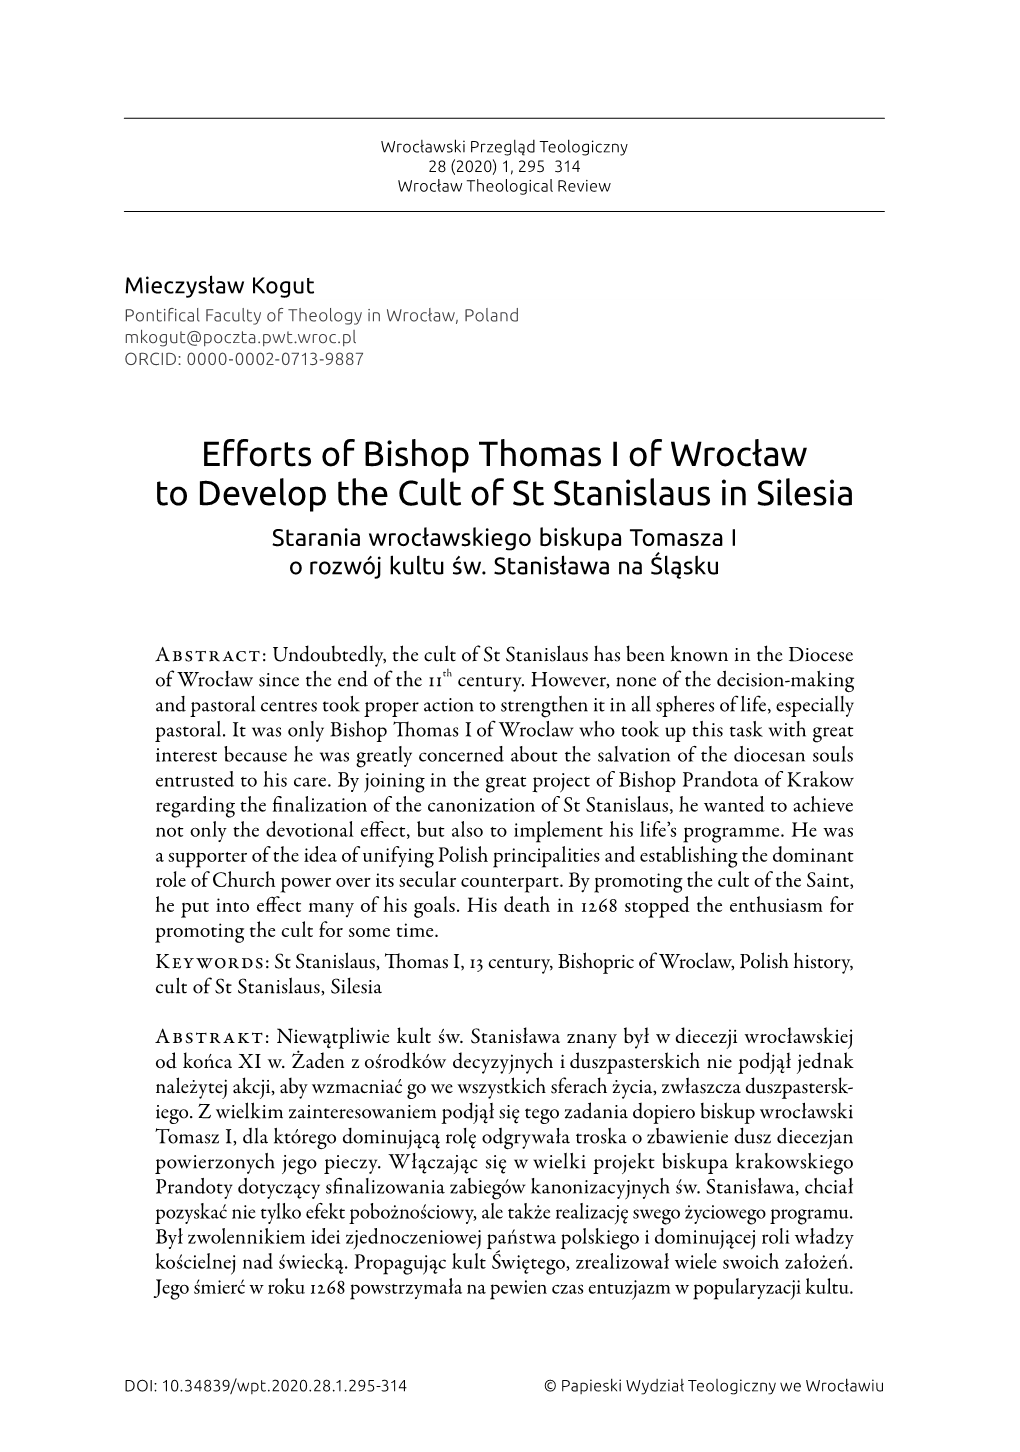 Efforts of Bishop Thomas I of Wrocław to Develop the Cult of St Stanislaus in Silesia Starania Wrocławskiego Biskupa Tomasza I O Rozwój Kultu Św